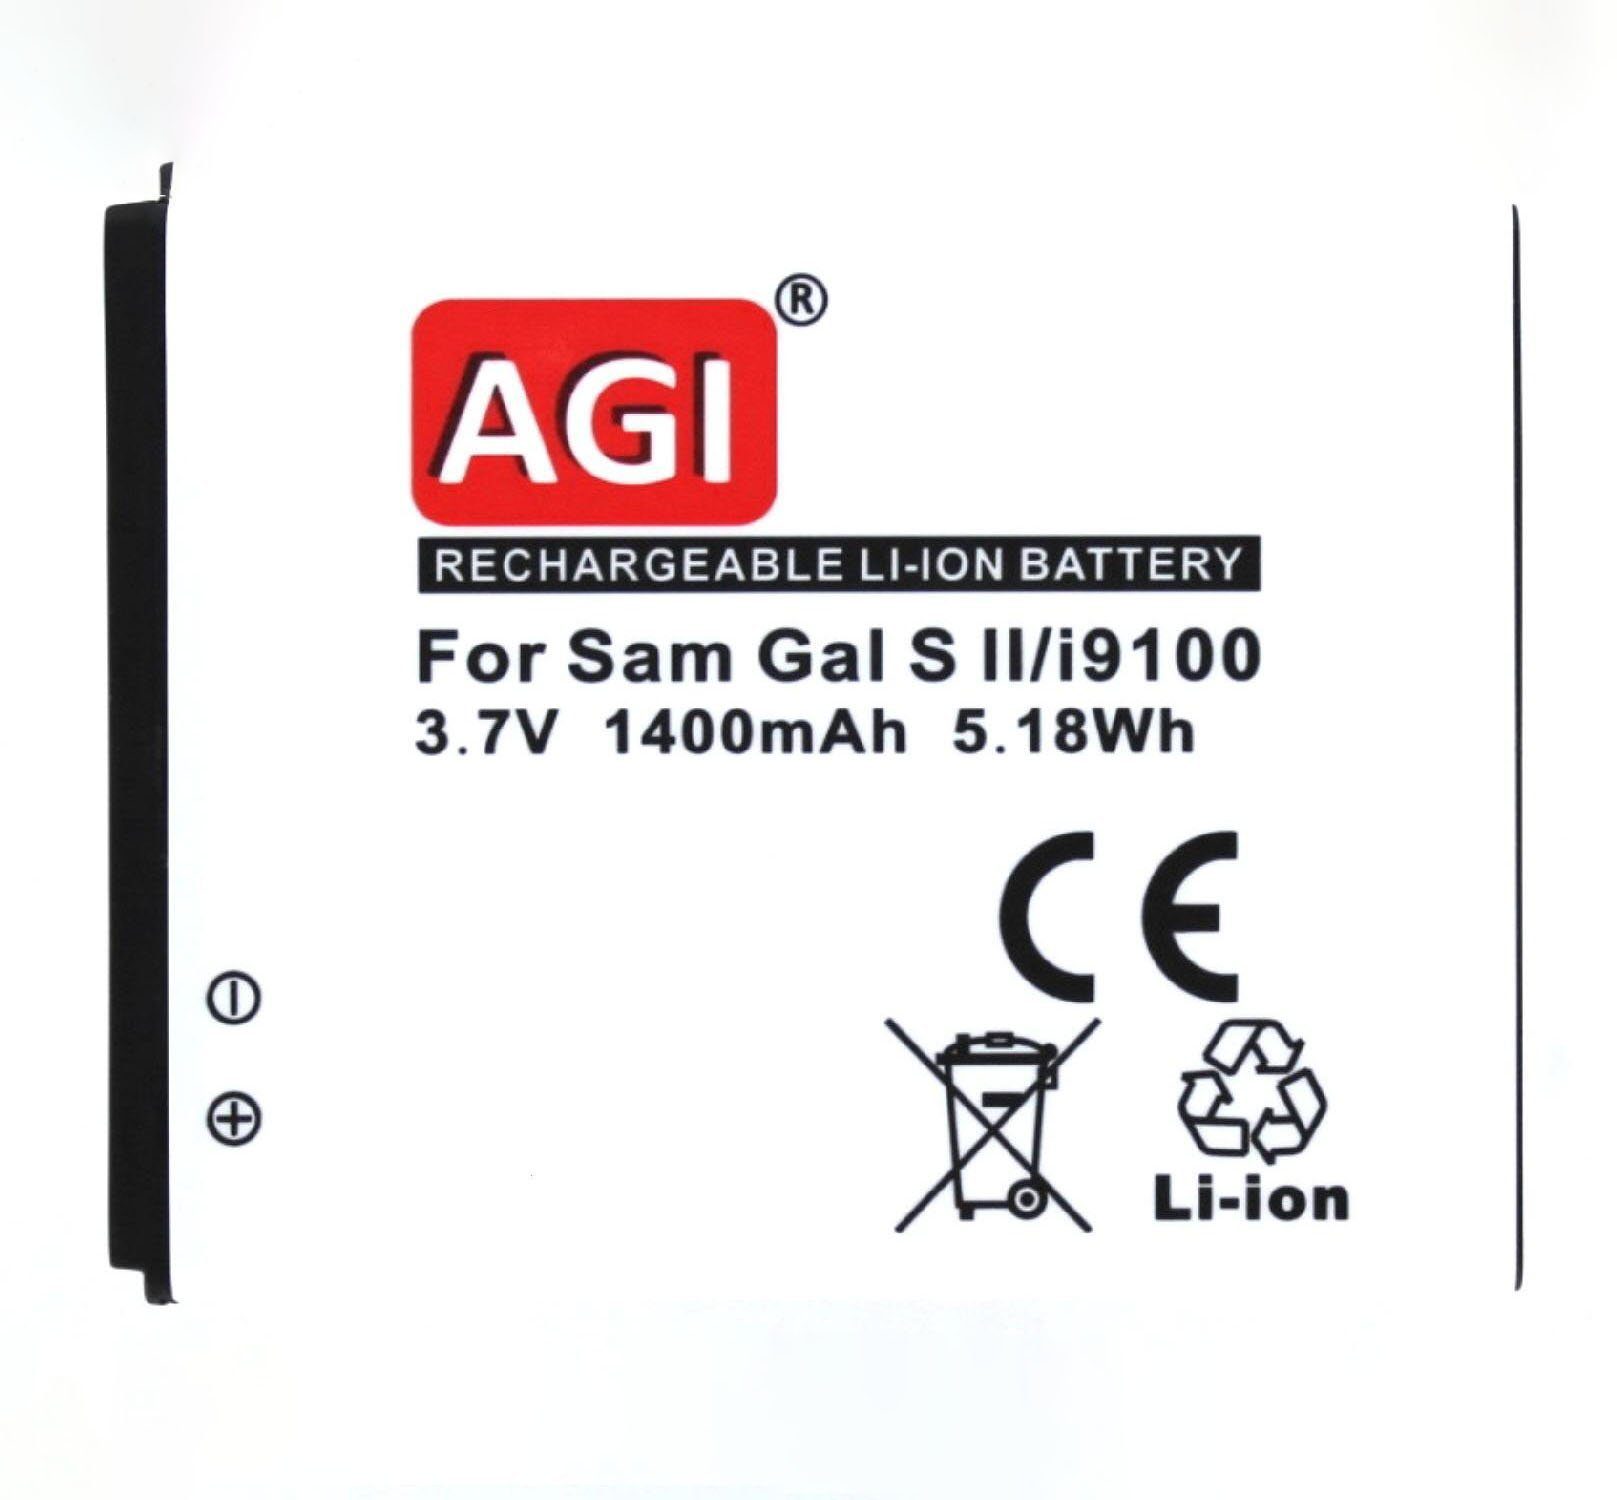 Akku mit AGI Akku Akku kompatibel Samsung GT-I9105P